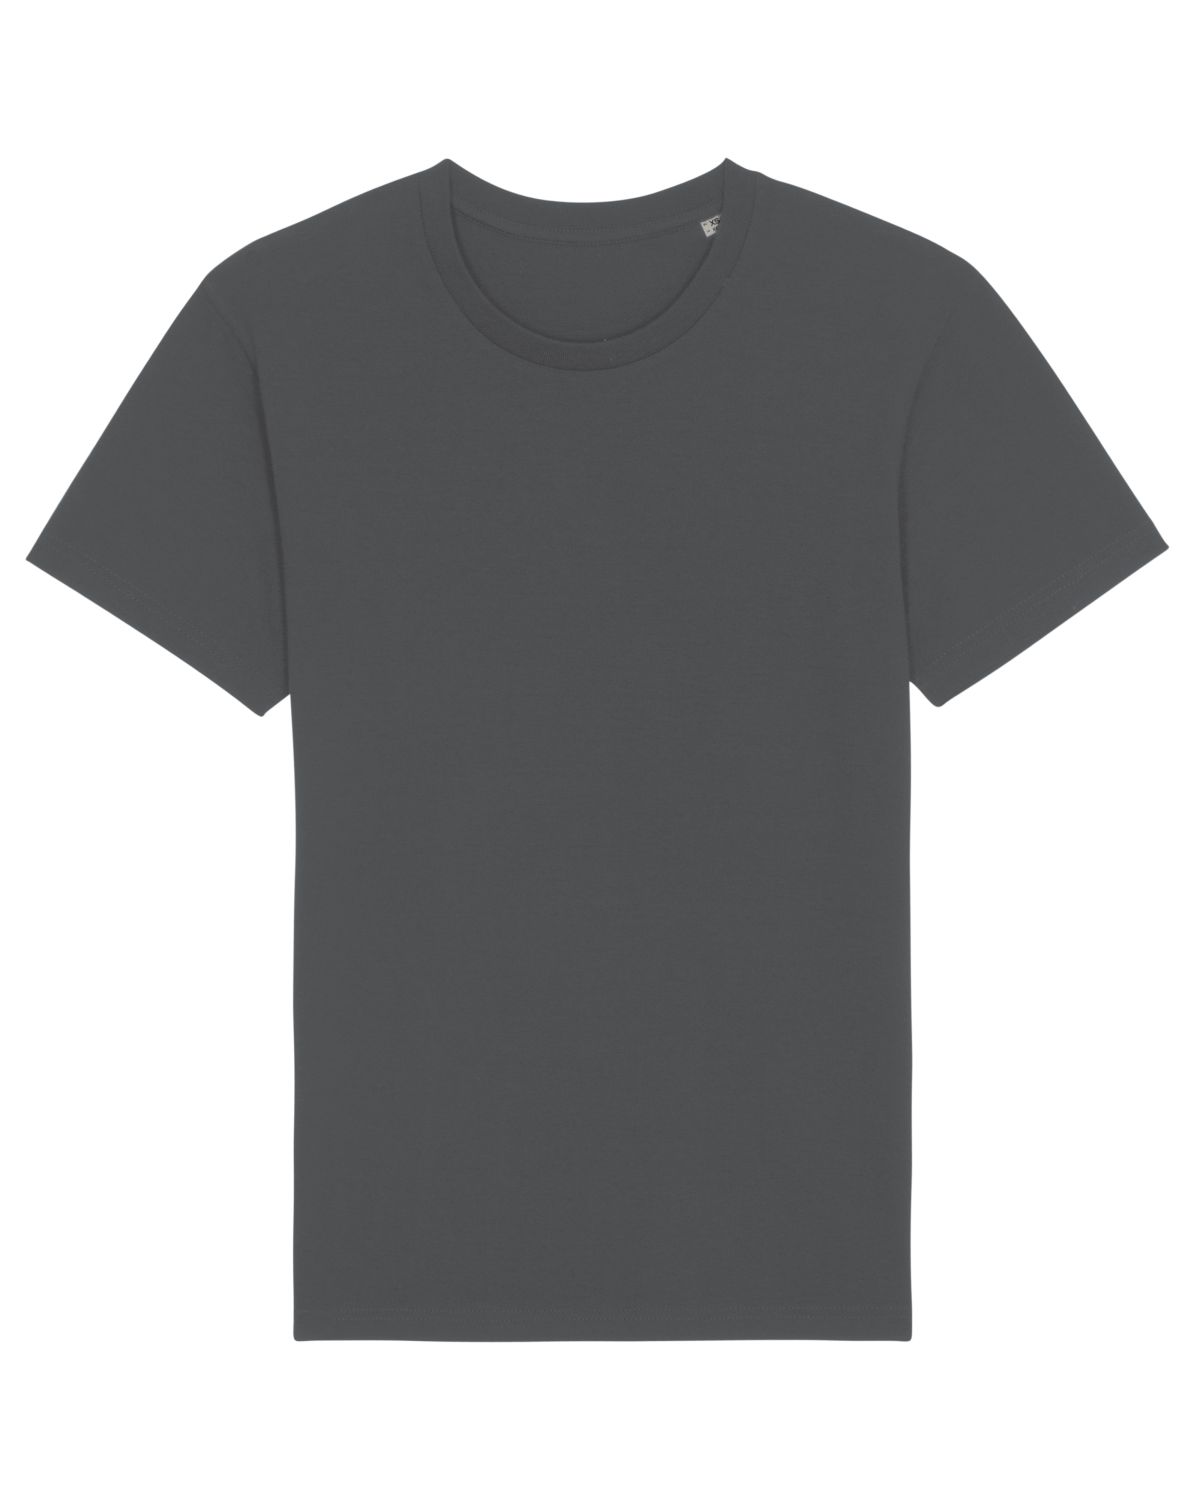 Stanley/Stella's - Rocker T-shirt - Anthracite